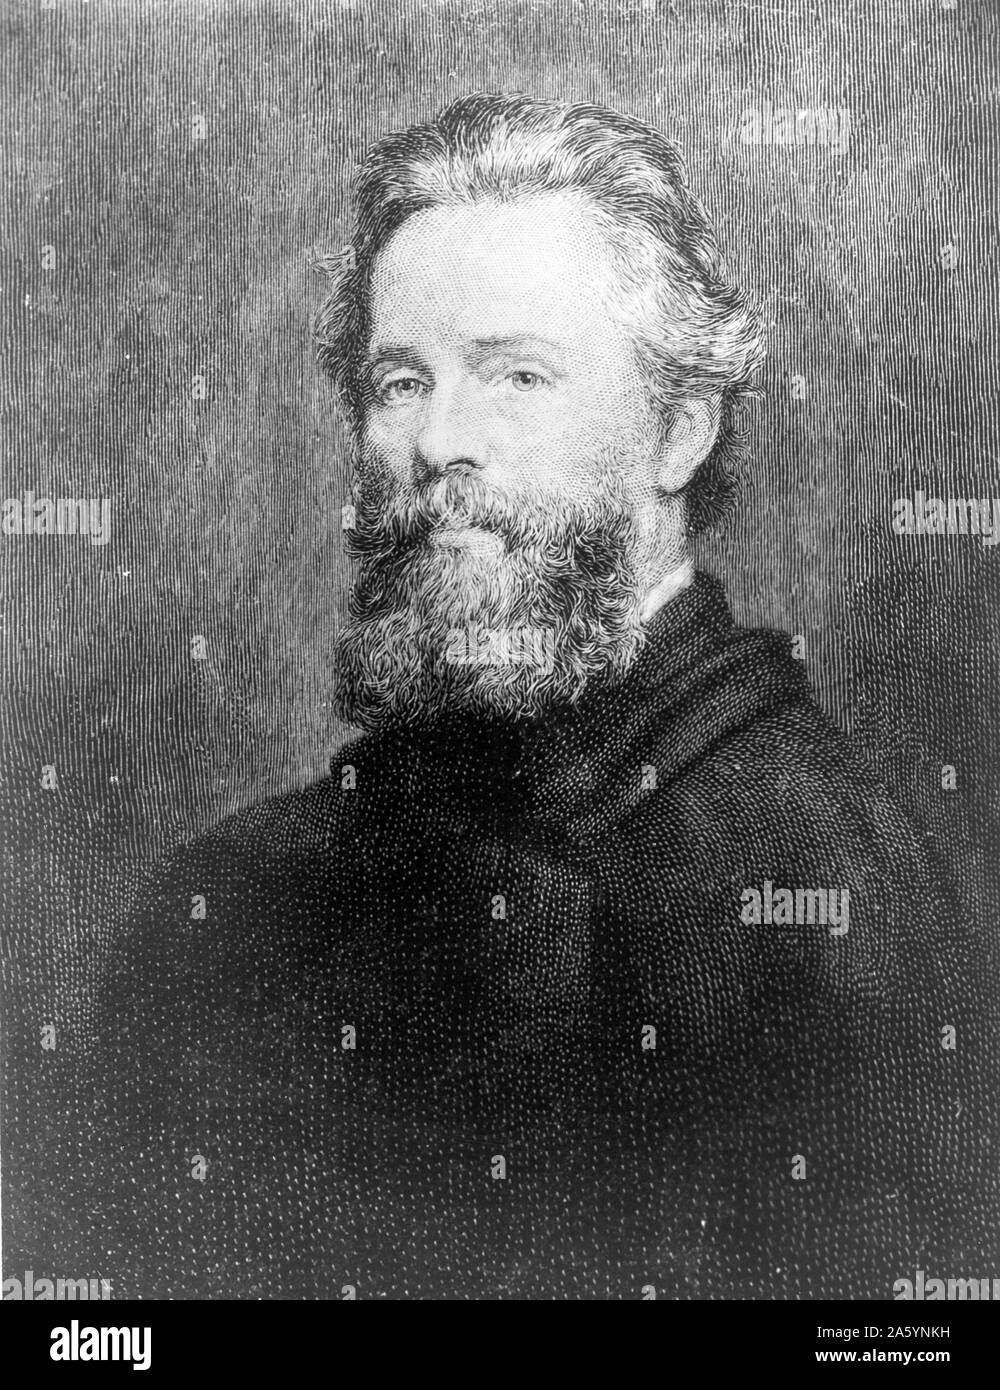 Herman Melville (autor americano), de cabeza y hombros retrato, mirando hacia la izquierda. Circa 1944. Fotografía de un grabado de Melville después un retrato de Joseph O. Eaton. Foto de stock